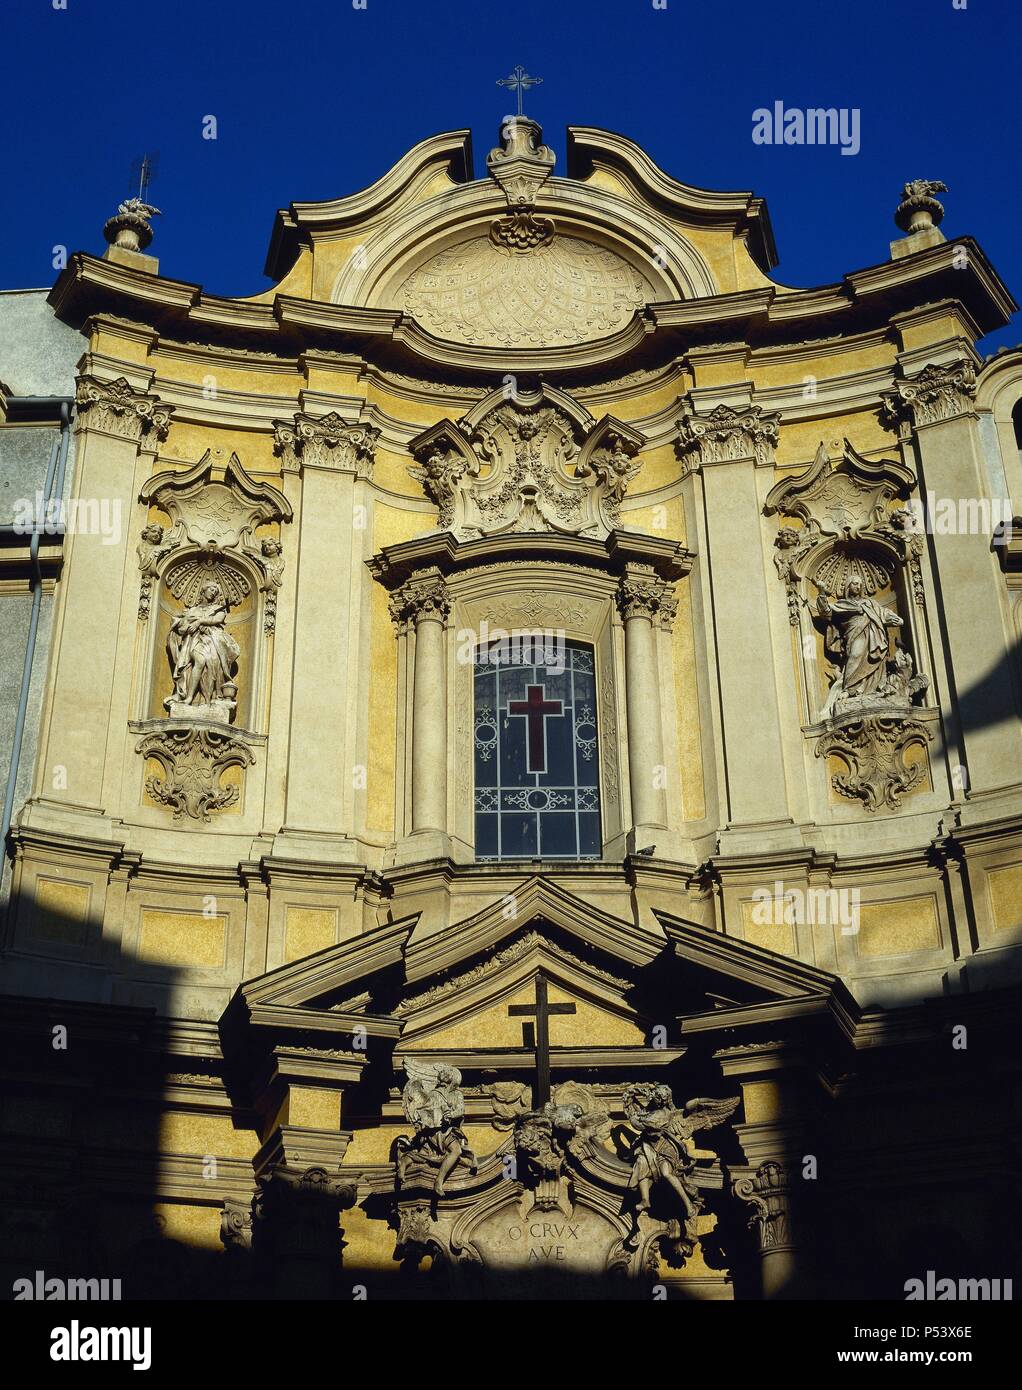 ARTE BARROCO. ITALIA. IGLESIA DE SANTA MARIA MAGDALENA. Vista parcial de la fachada del templo, construido durante el periodo barroco. ROMA. Stock Photo